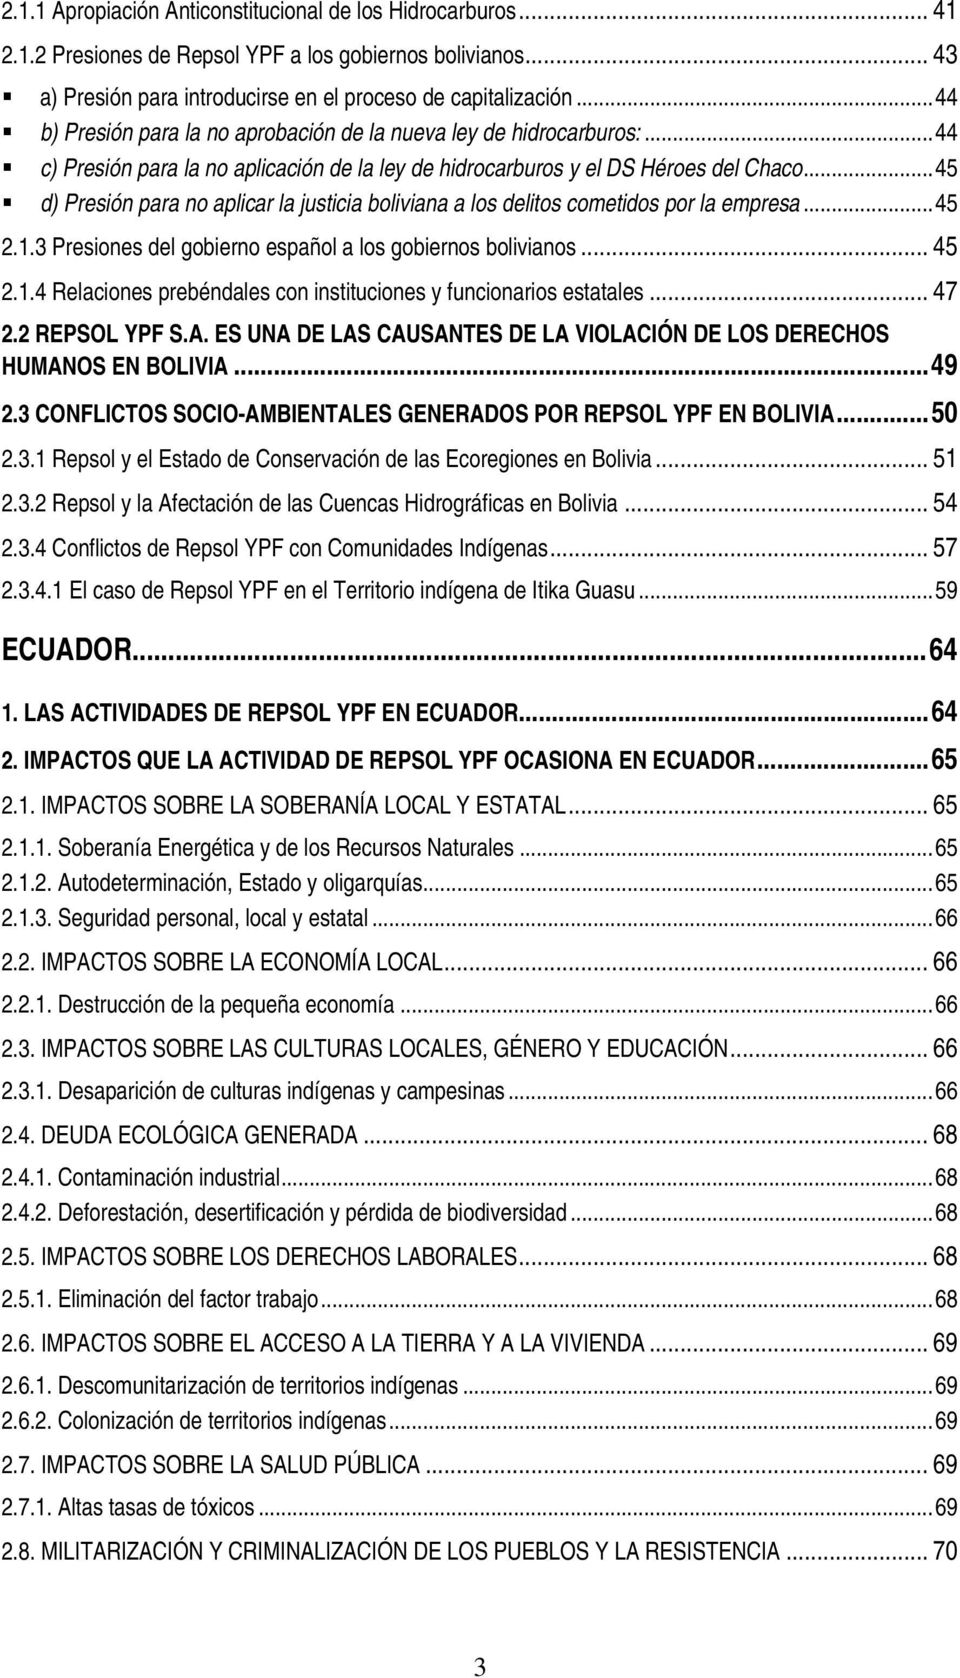 ..45 d) Presión para no aplicar la justicia boliviana a los delitos cometidos por la empresa...45 2.1.3 Presiones del gobierno español a los gobiernos bolivianos... 45 2.1.4 Relaciones prebéndales con instituciones y funcionarios estatales.